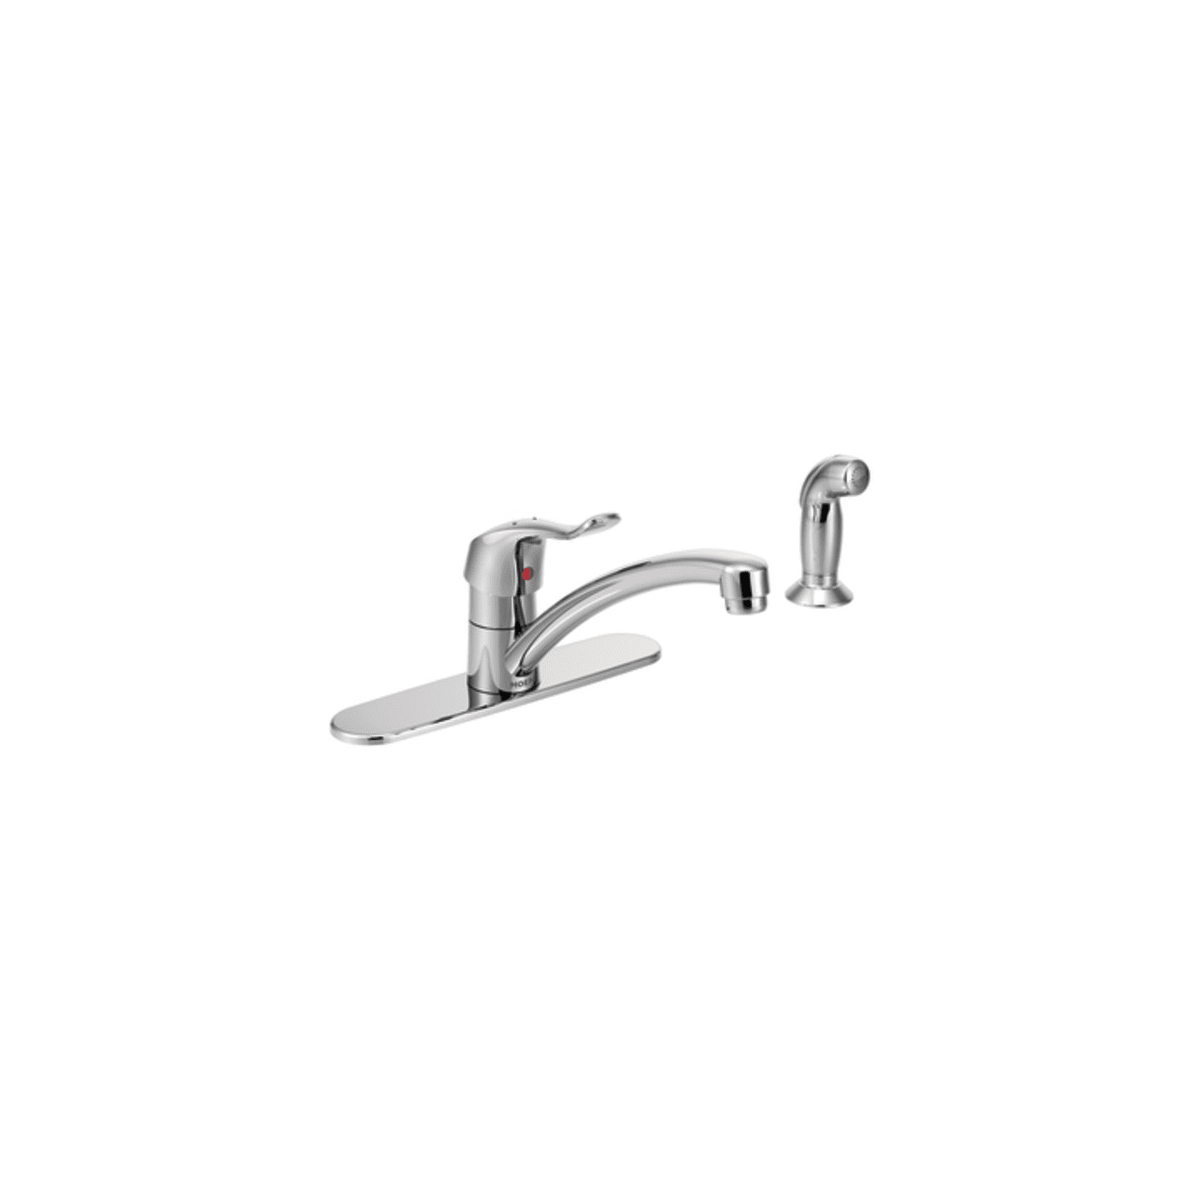 Moen 8707 Chrome M-DURA Commercial Kitchen Faucet - Faucet.com